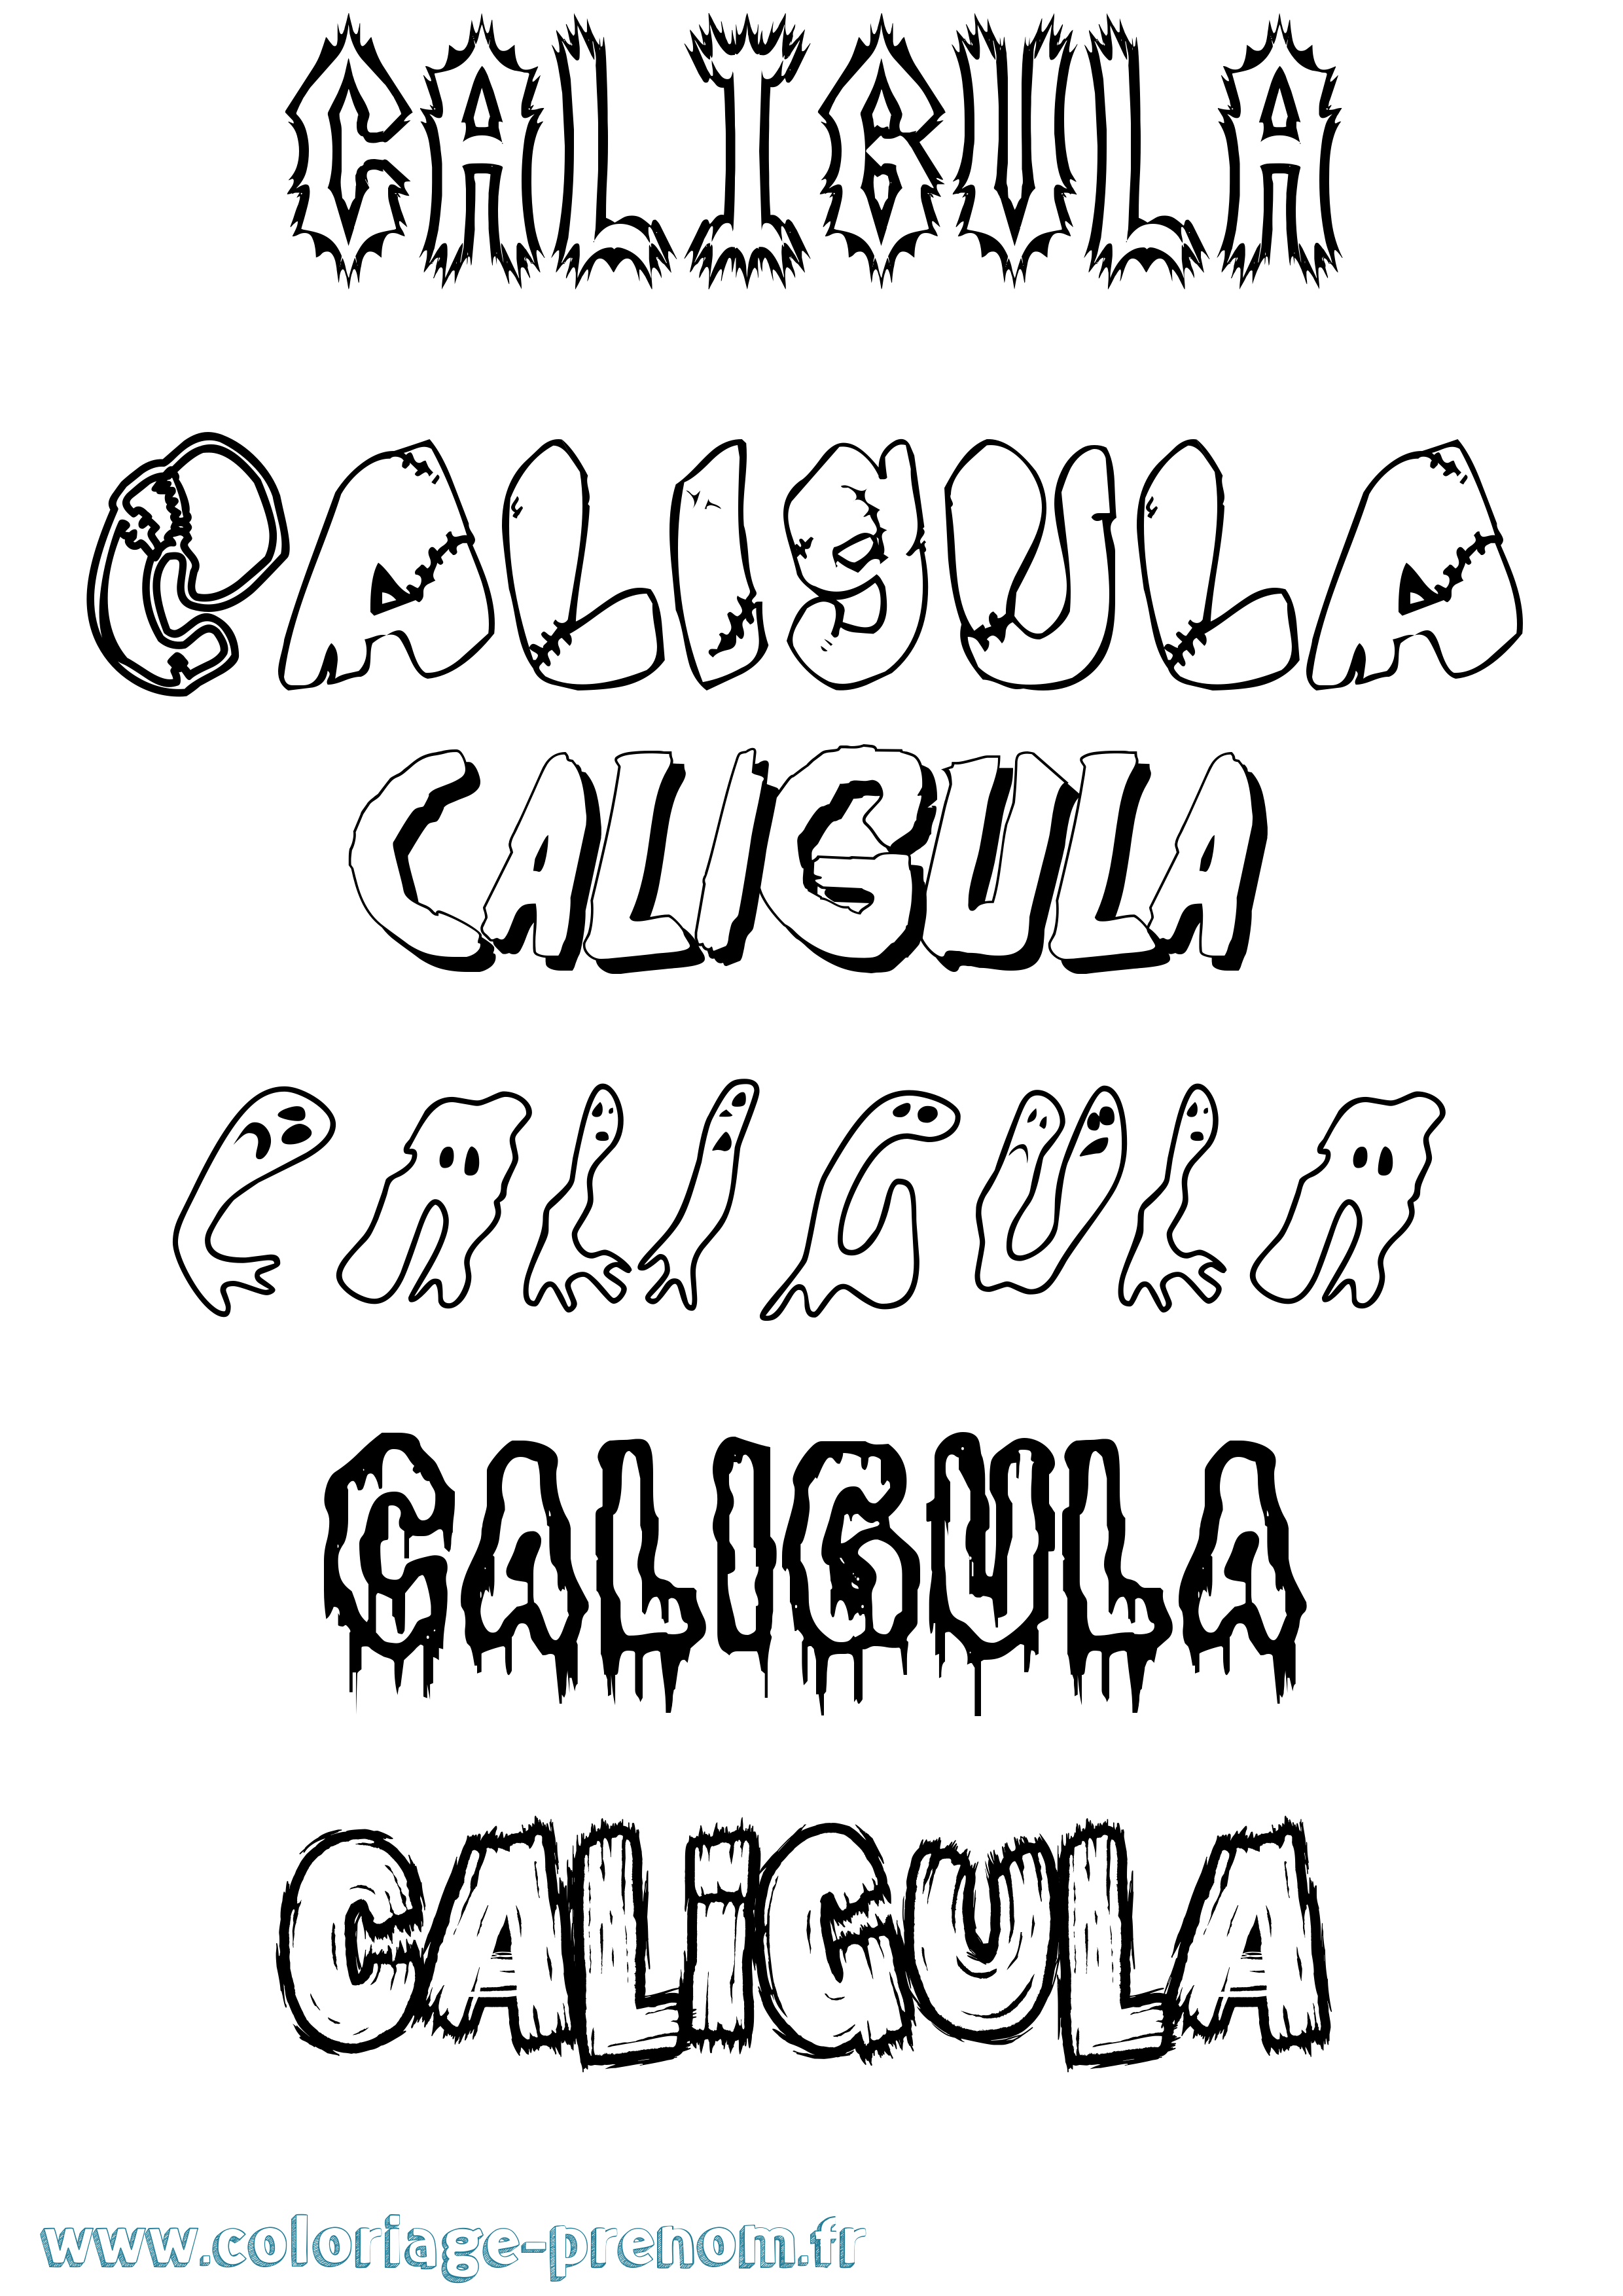 Coloriage prénom Caligula Frisson